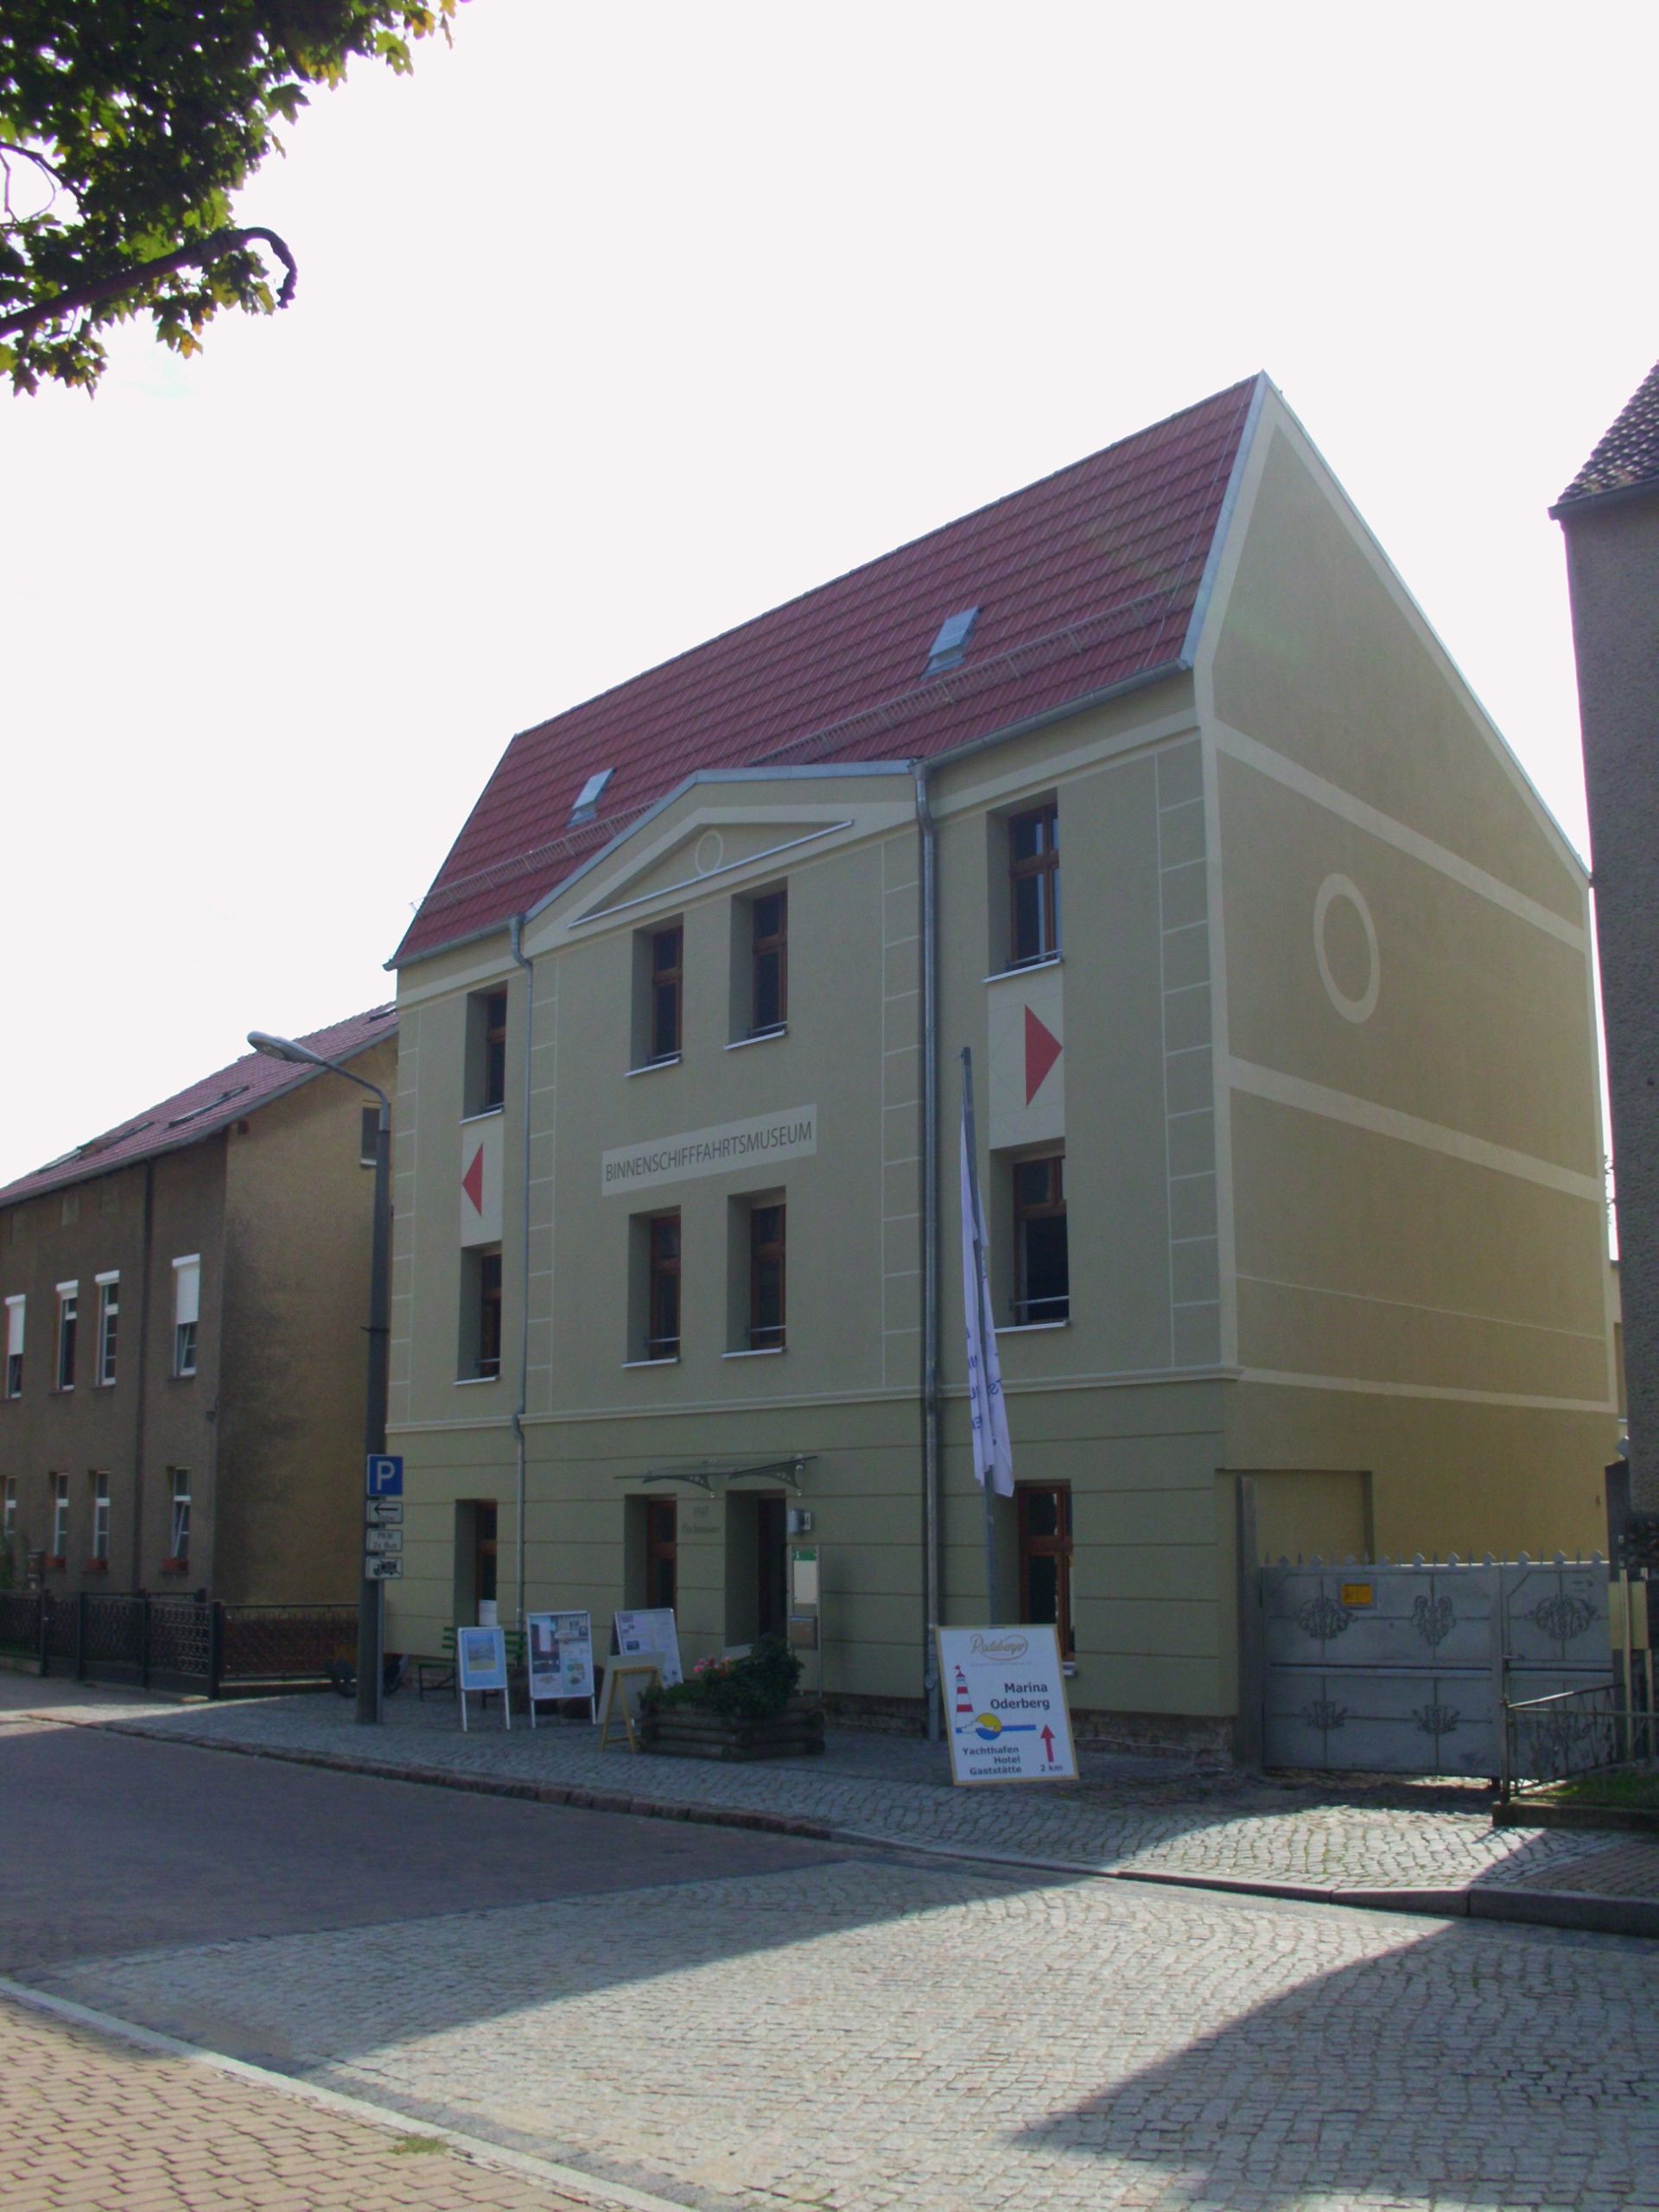 Binnenschifffahrtsmuseum Oderberg